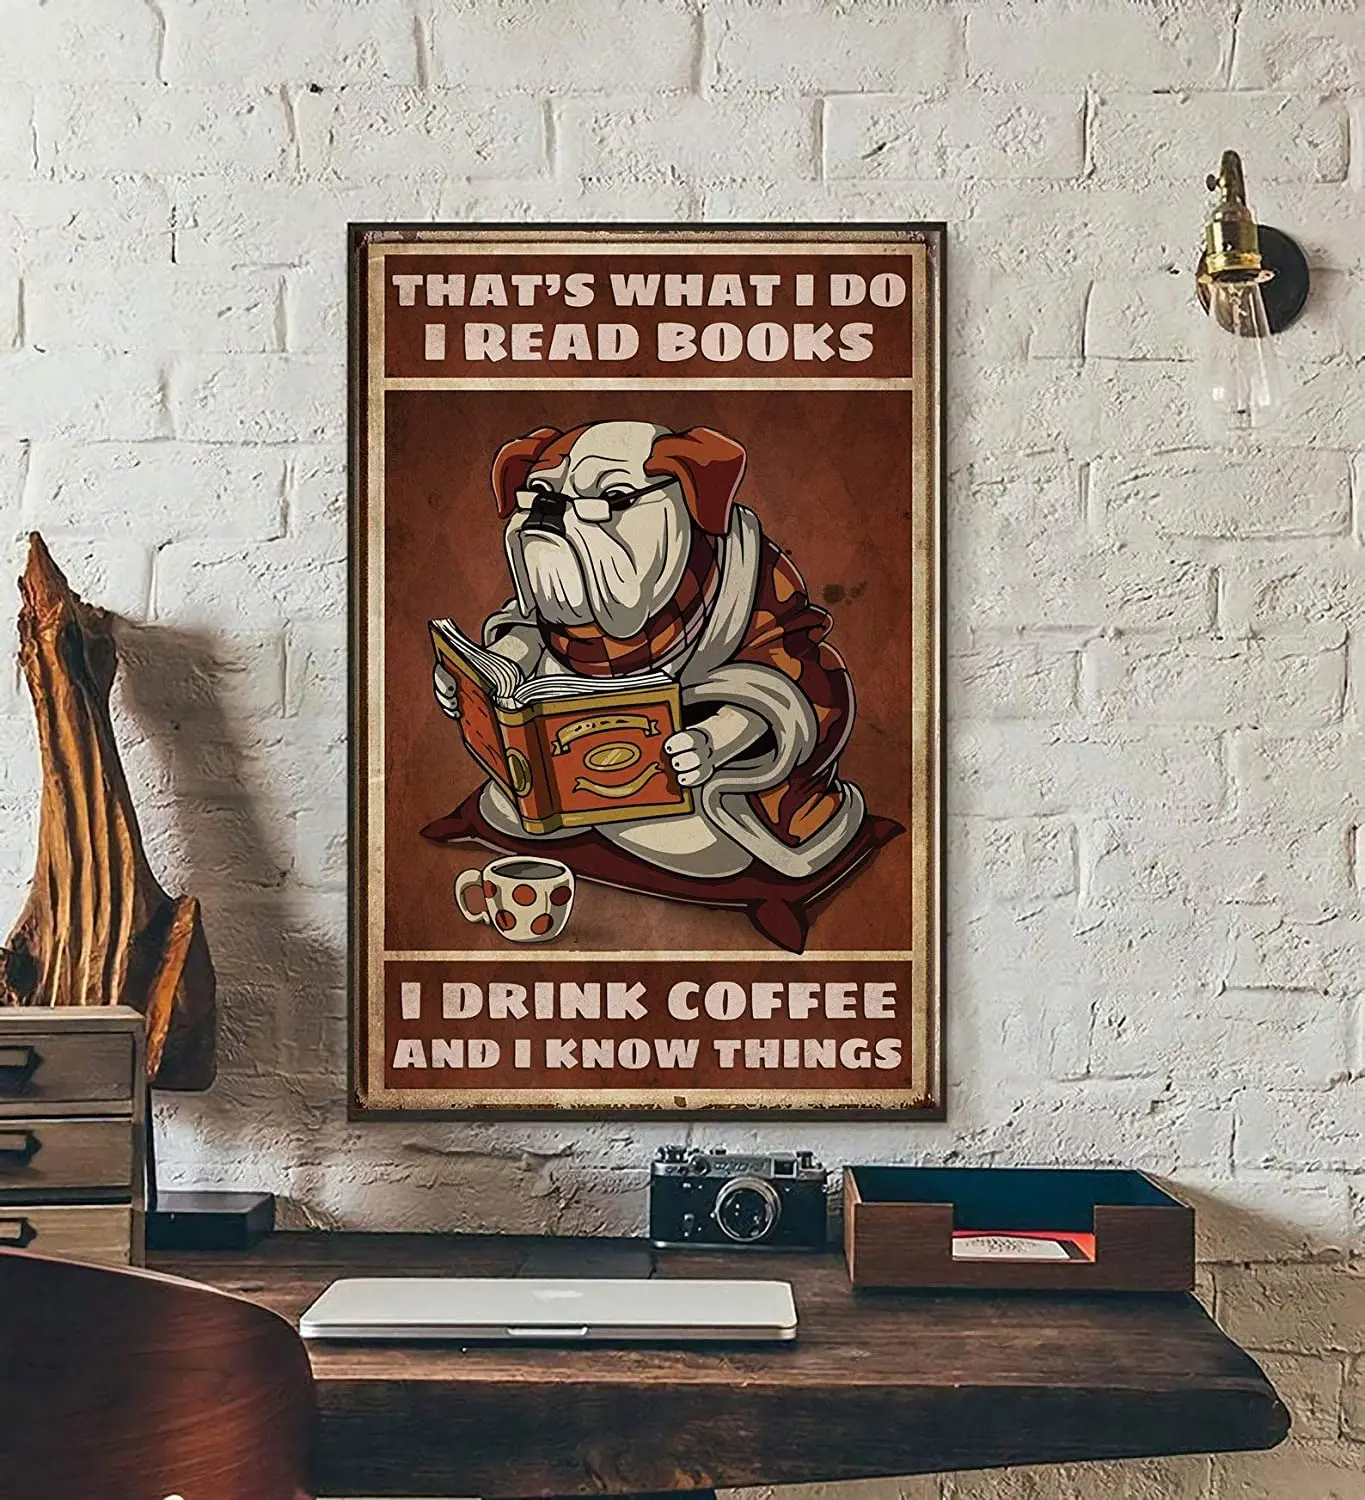 

Eeypy металлический знак Любовь Собака Искусство, бульдог искусство, смешная собака Книга кофе искусство, это то, что я читаю книги я пью кофе и...